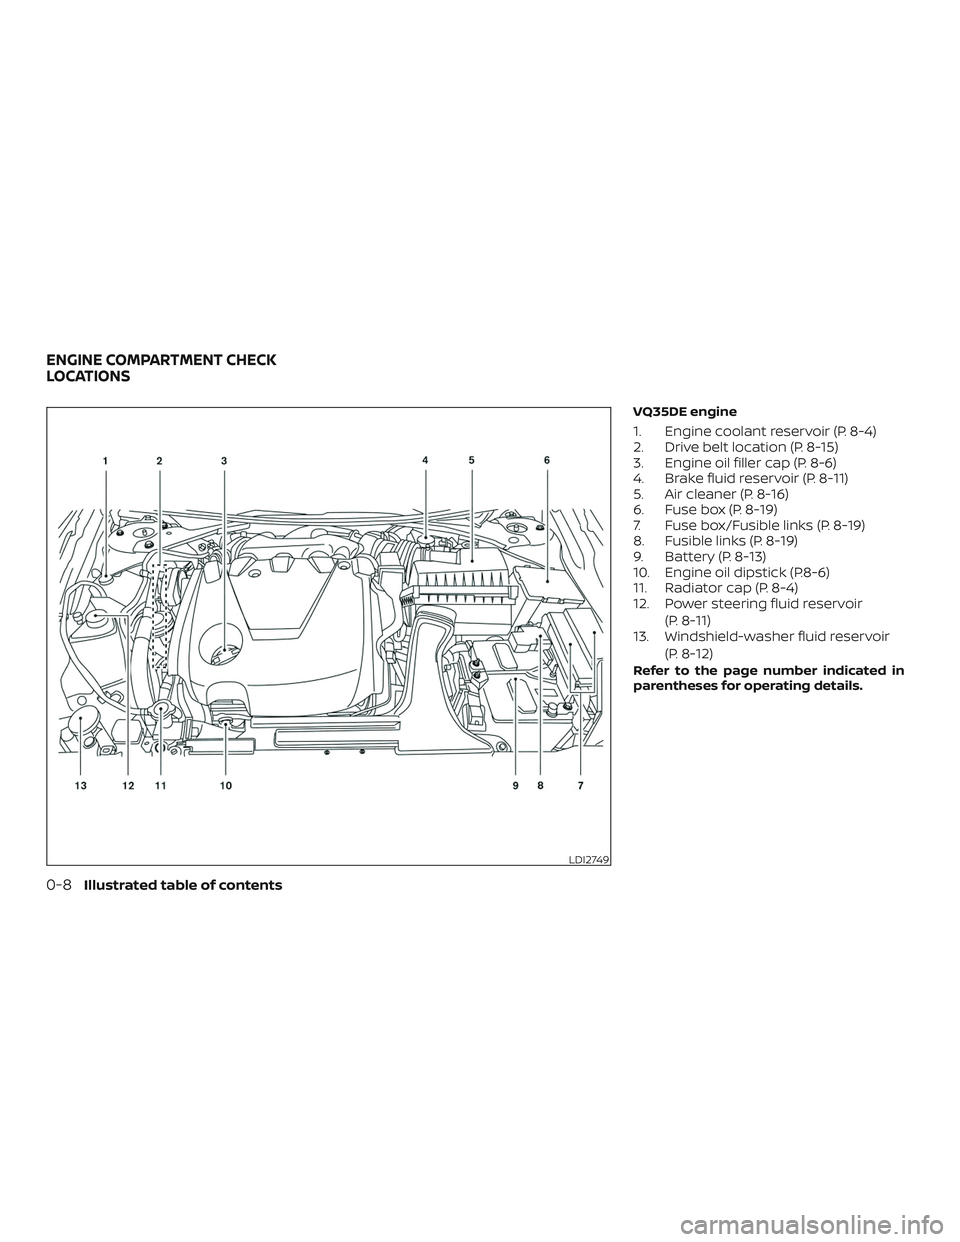 NISSAN MAXIMA 2019  Owner´s Manual VQ35DE engine
1. Engine coolant reservoir (P. 8-4)
2. Drive belt location (P. 8-15)
3. Engine oil filler cap (P. 8-6)
4. Brake fluid reservoir (P. 8-11)
5. Air cleaner (P. 8-16)
6. Fuse box (P. 8-19)
